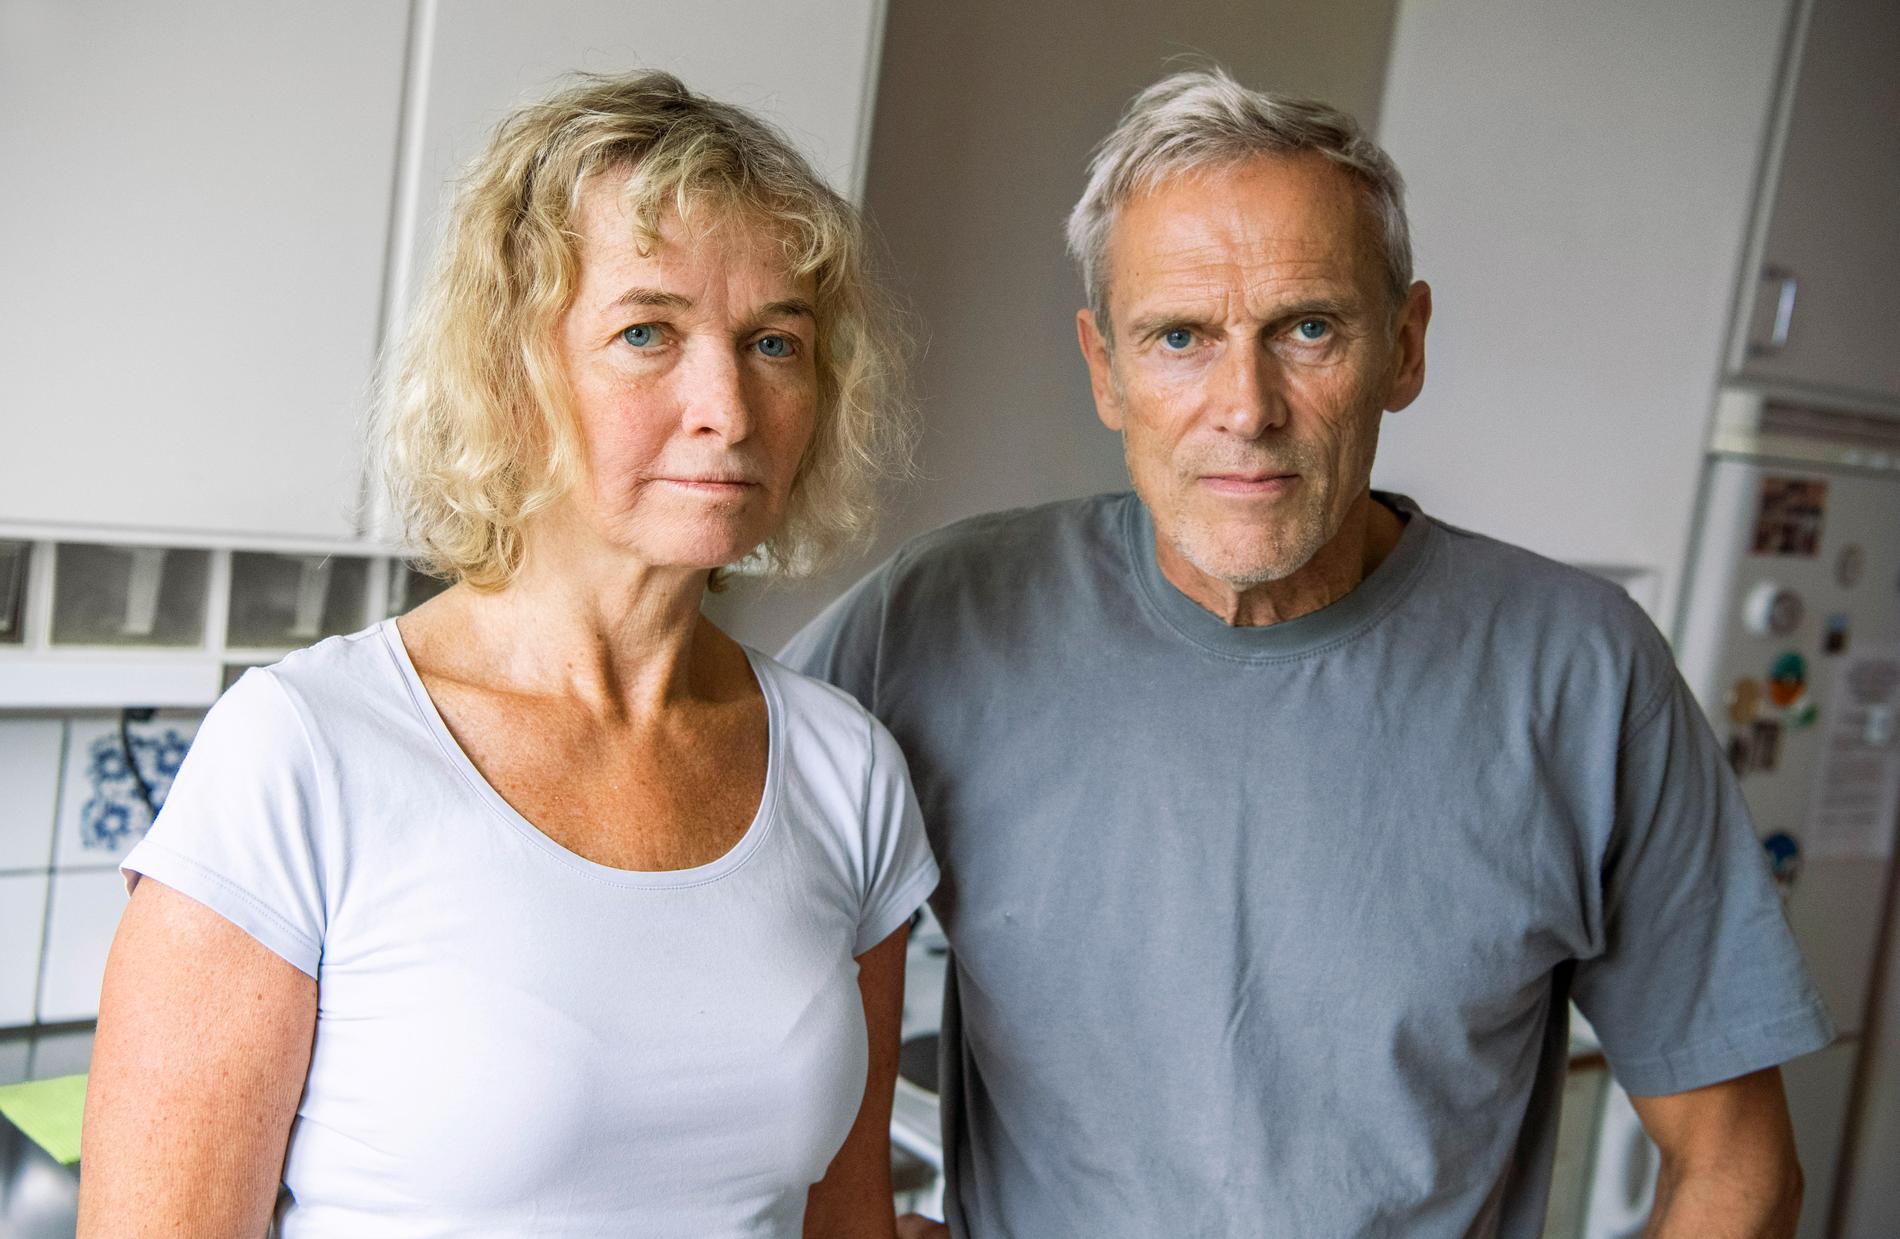 Jan Bagge och Maria Nylander, som bor i Bergshamra, riskerar en 60 procentig hyreshöjning efter en renovering av sin lägenhet.